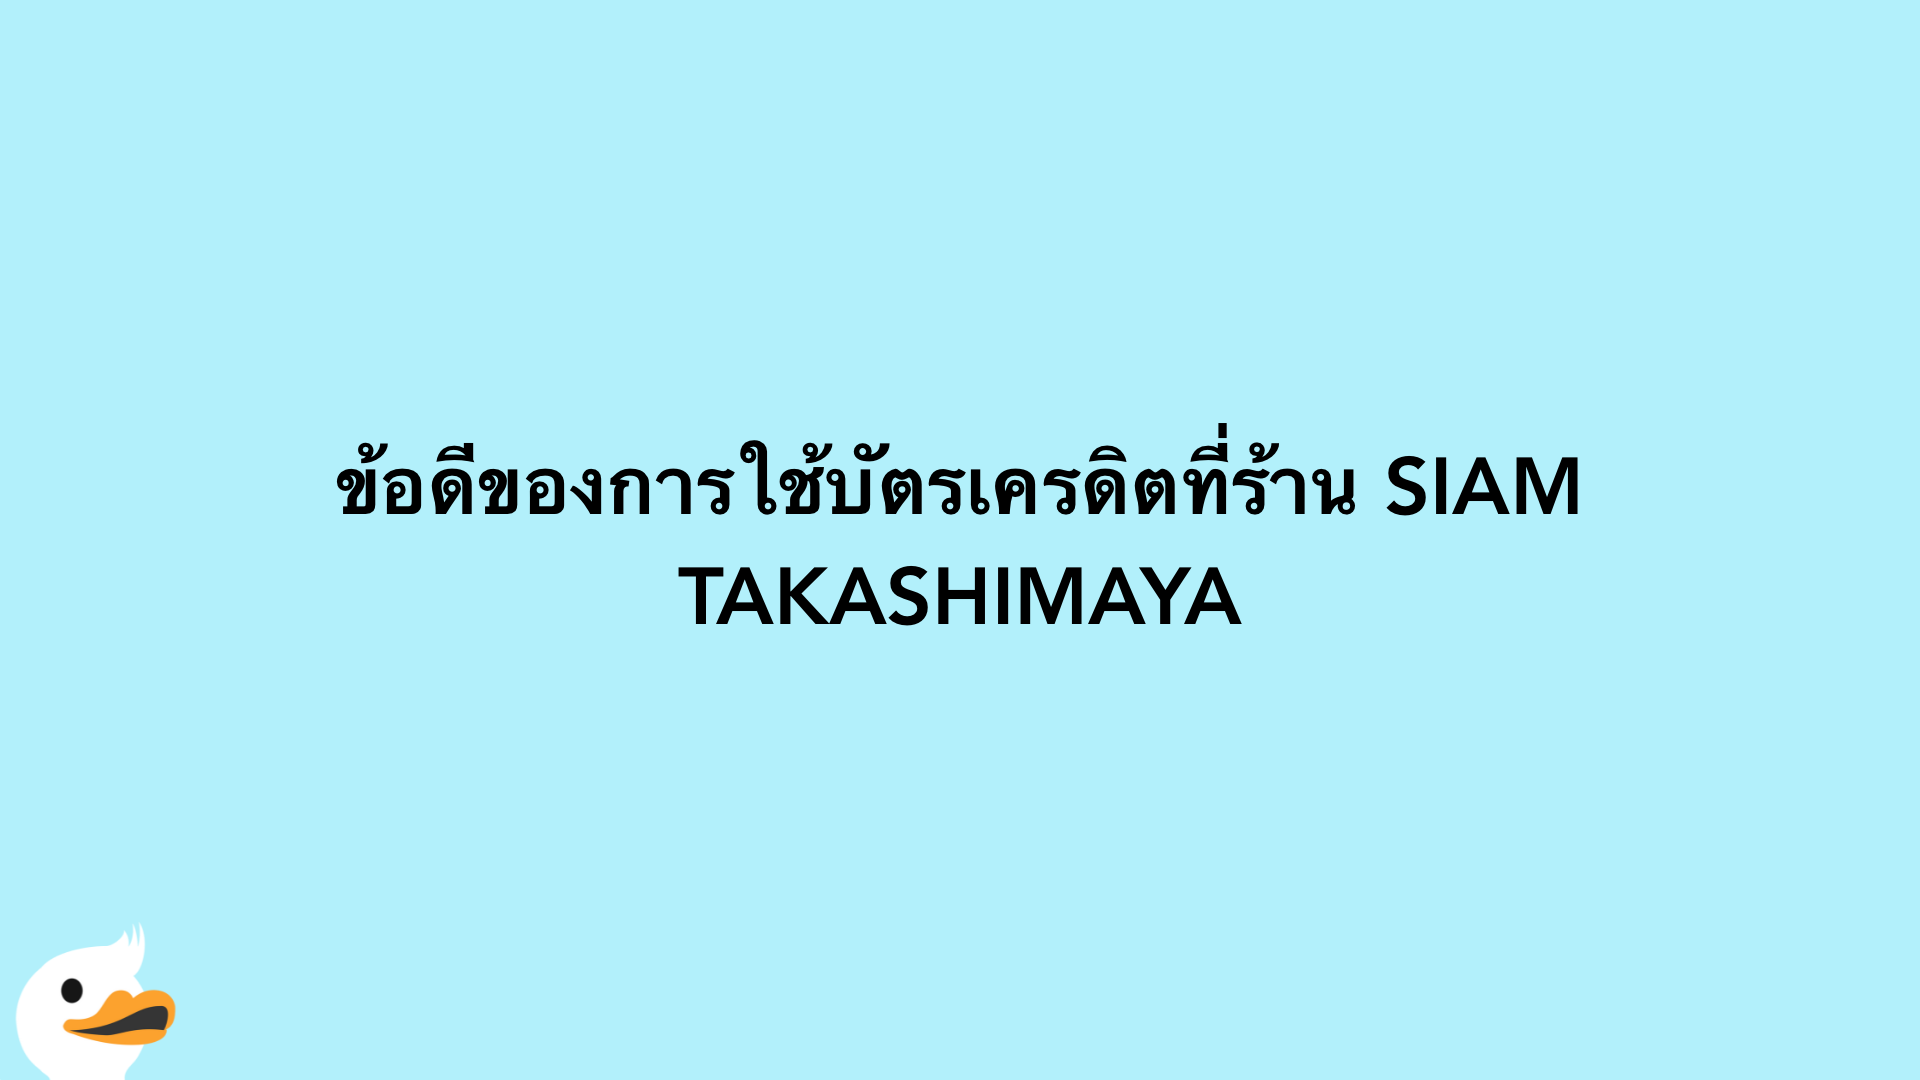 ข้อดีของการใช้บัตรเครดิตที่ร้าน SIAM TAKASHIMAYA